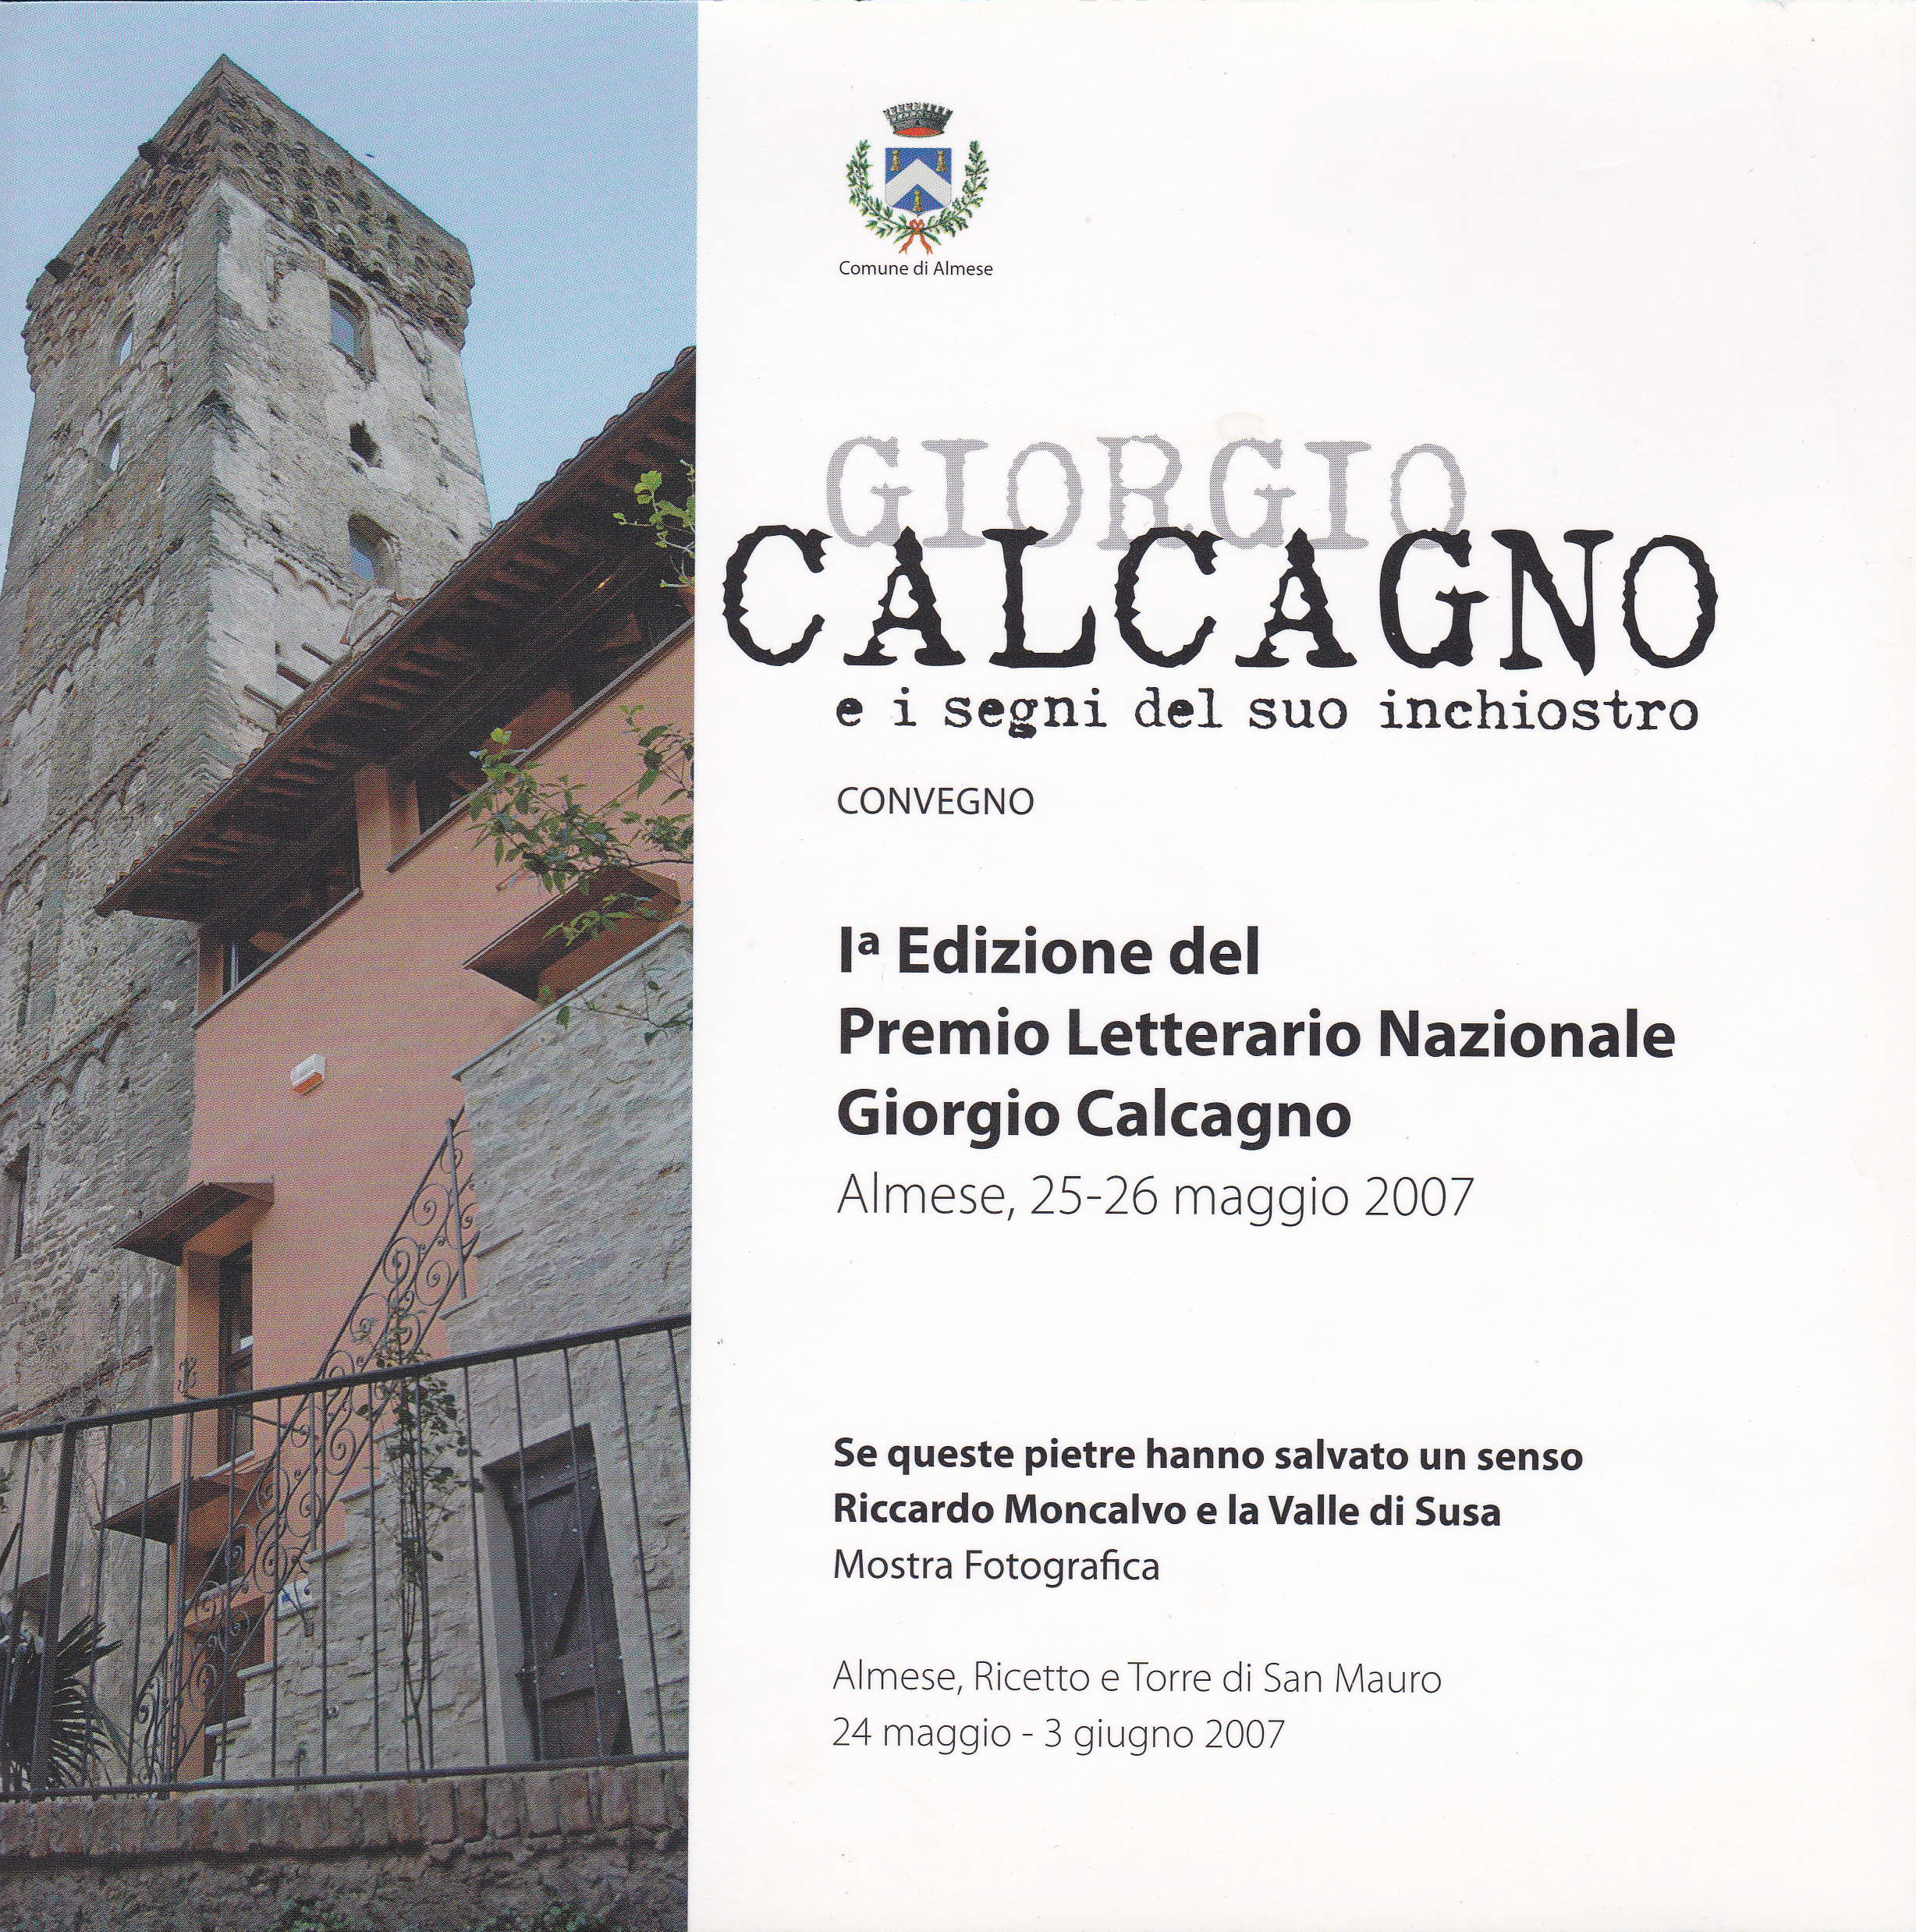 Giorgio Calcagno e i segni del suo inchiostro